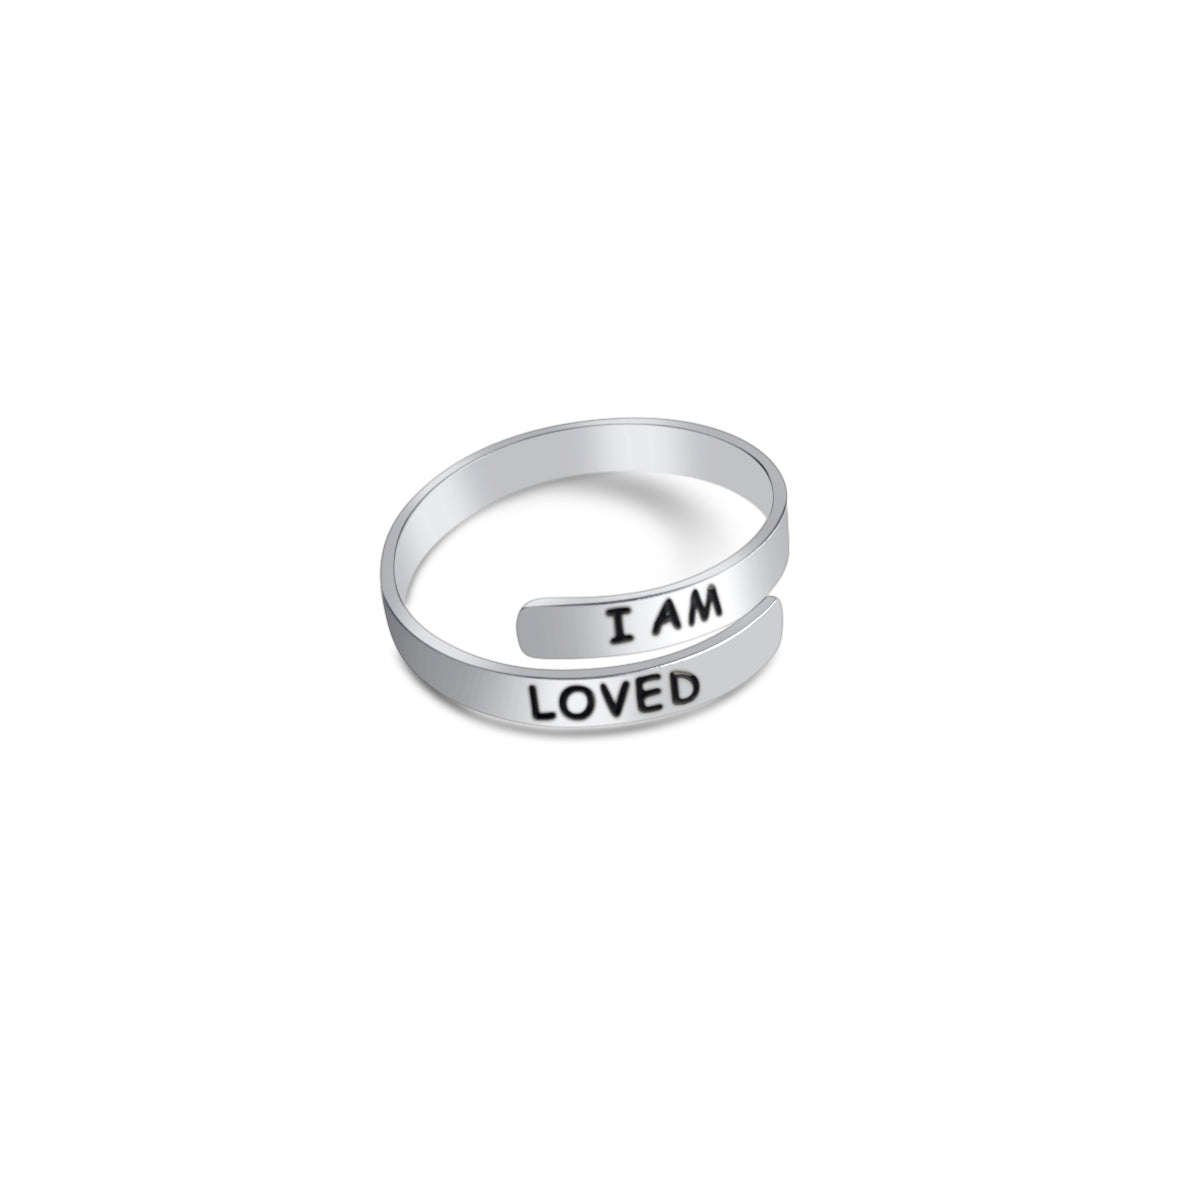 I am Loved (Affirmation Ring)